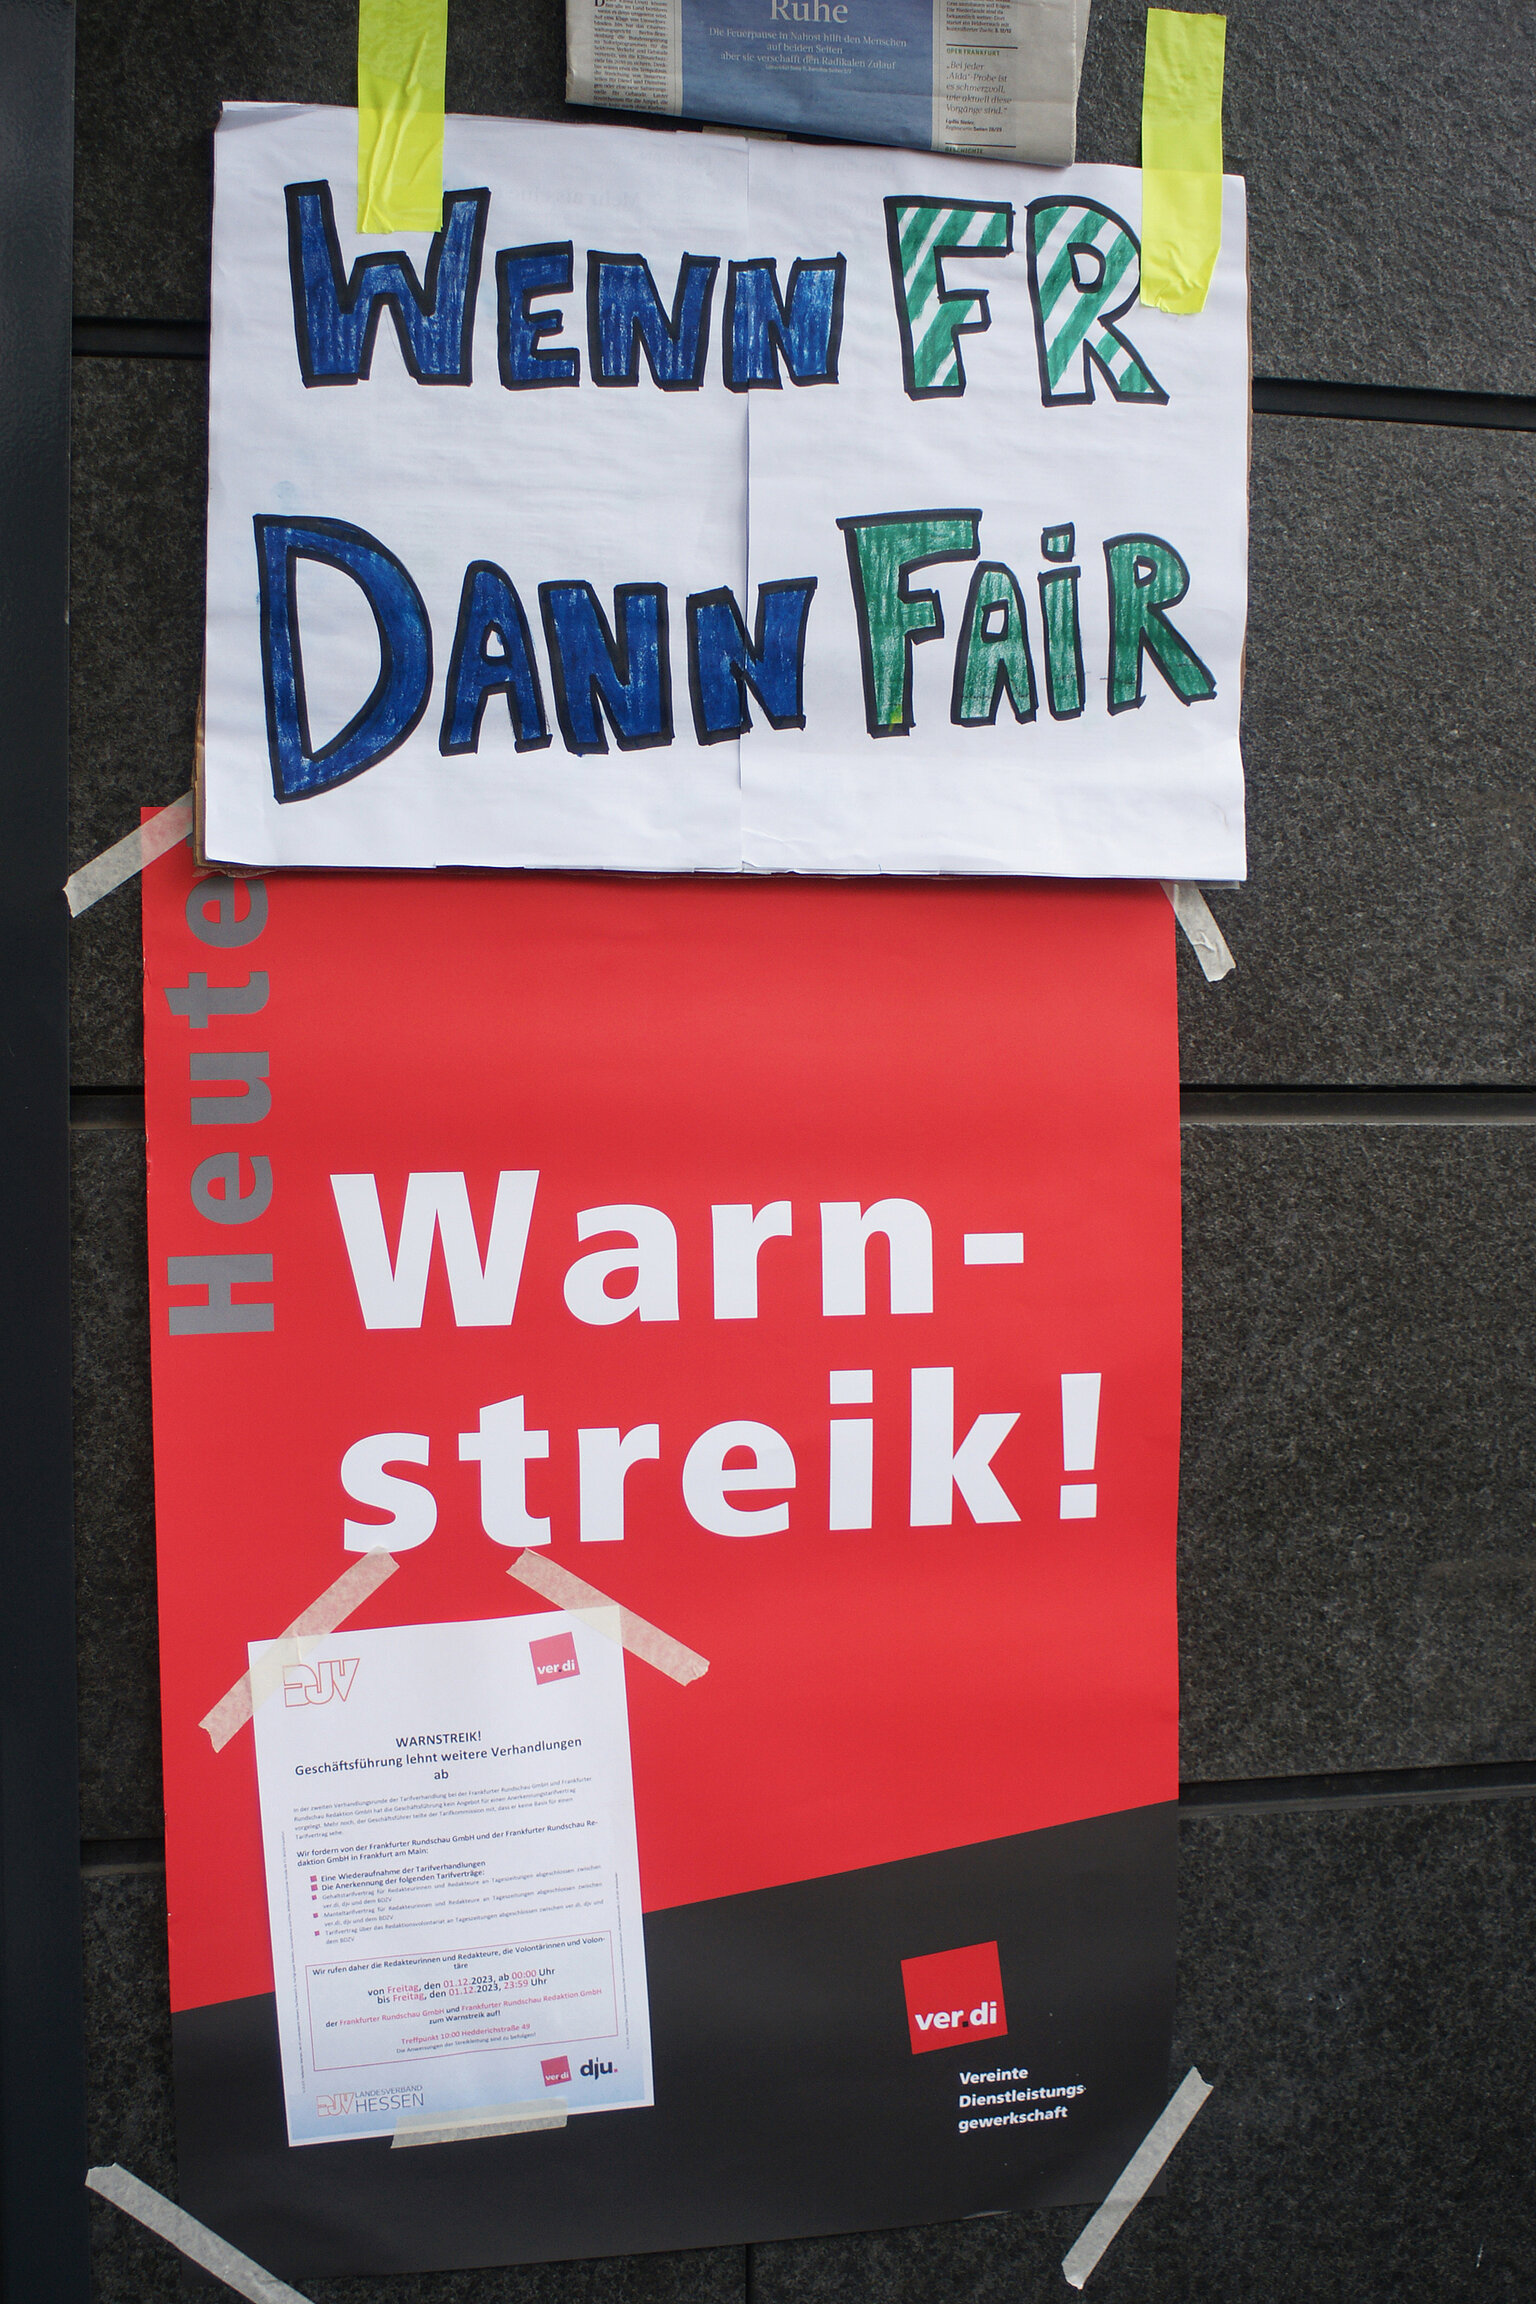 Streik bei der Frankfurter Rundschau – Streik bei der Frankfurter Rundschau